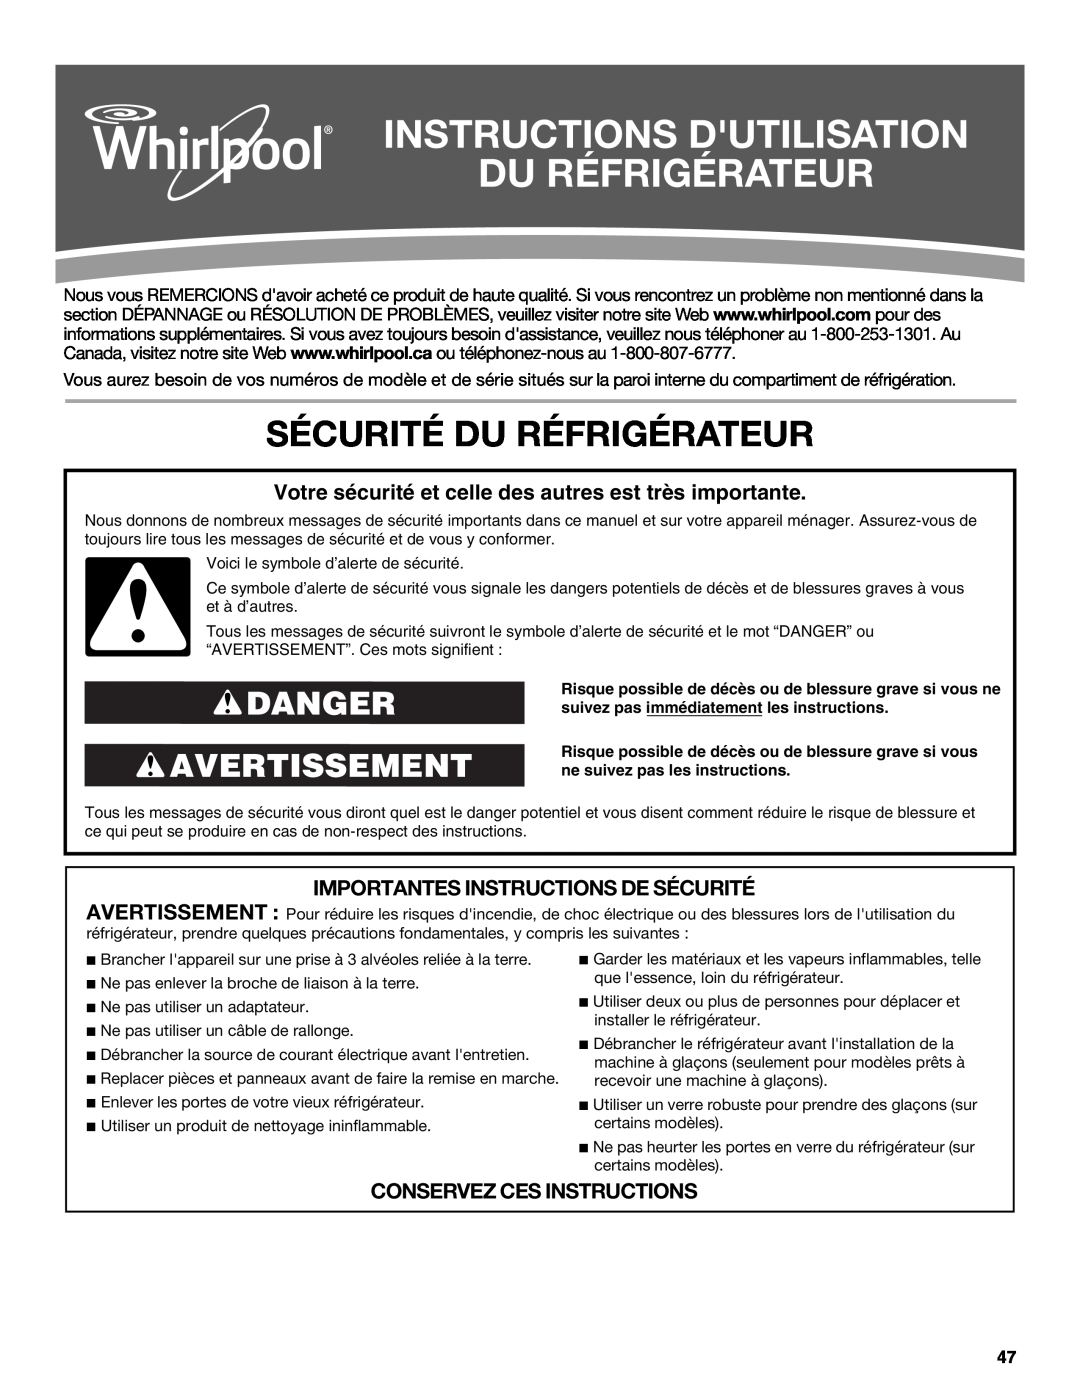 Whirlpool ED2KHAXVB Instructions Dutilisation Du Réfrigérateur, Sécurité Du Réfrigérateur, Danger Avertissement 